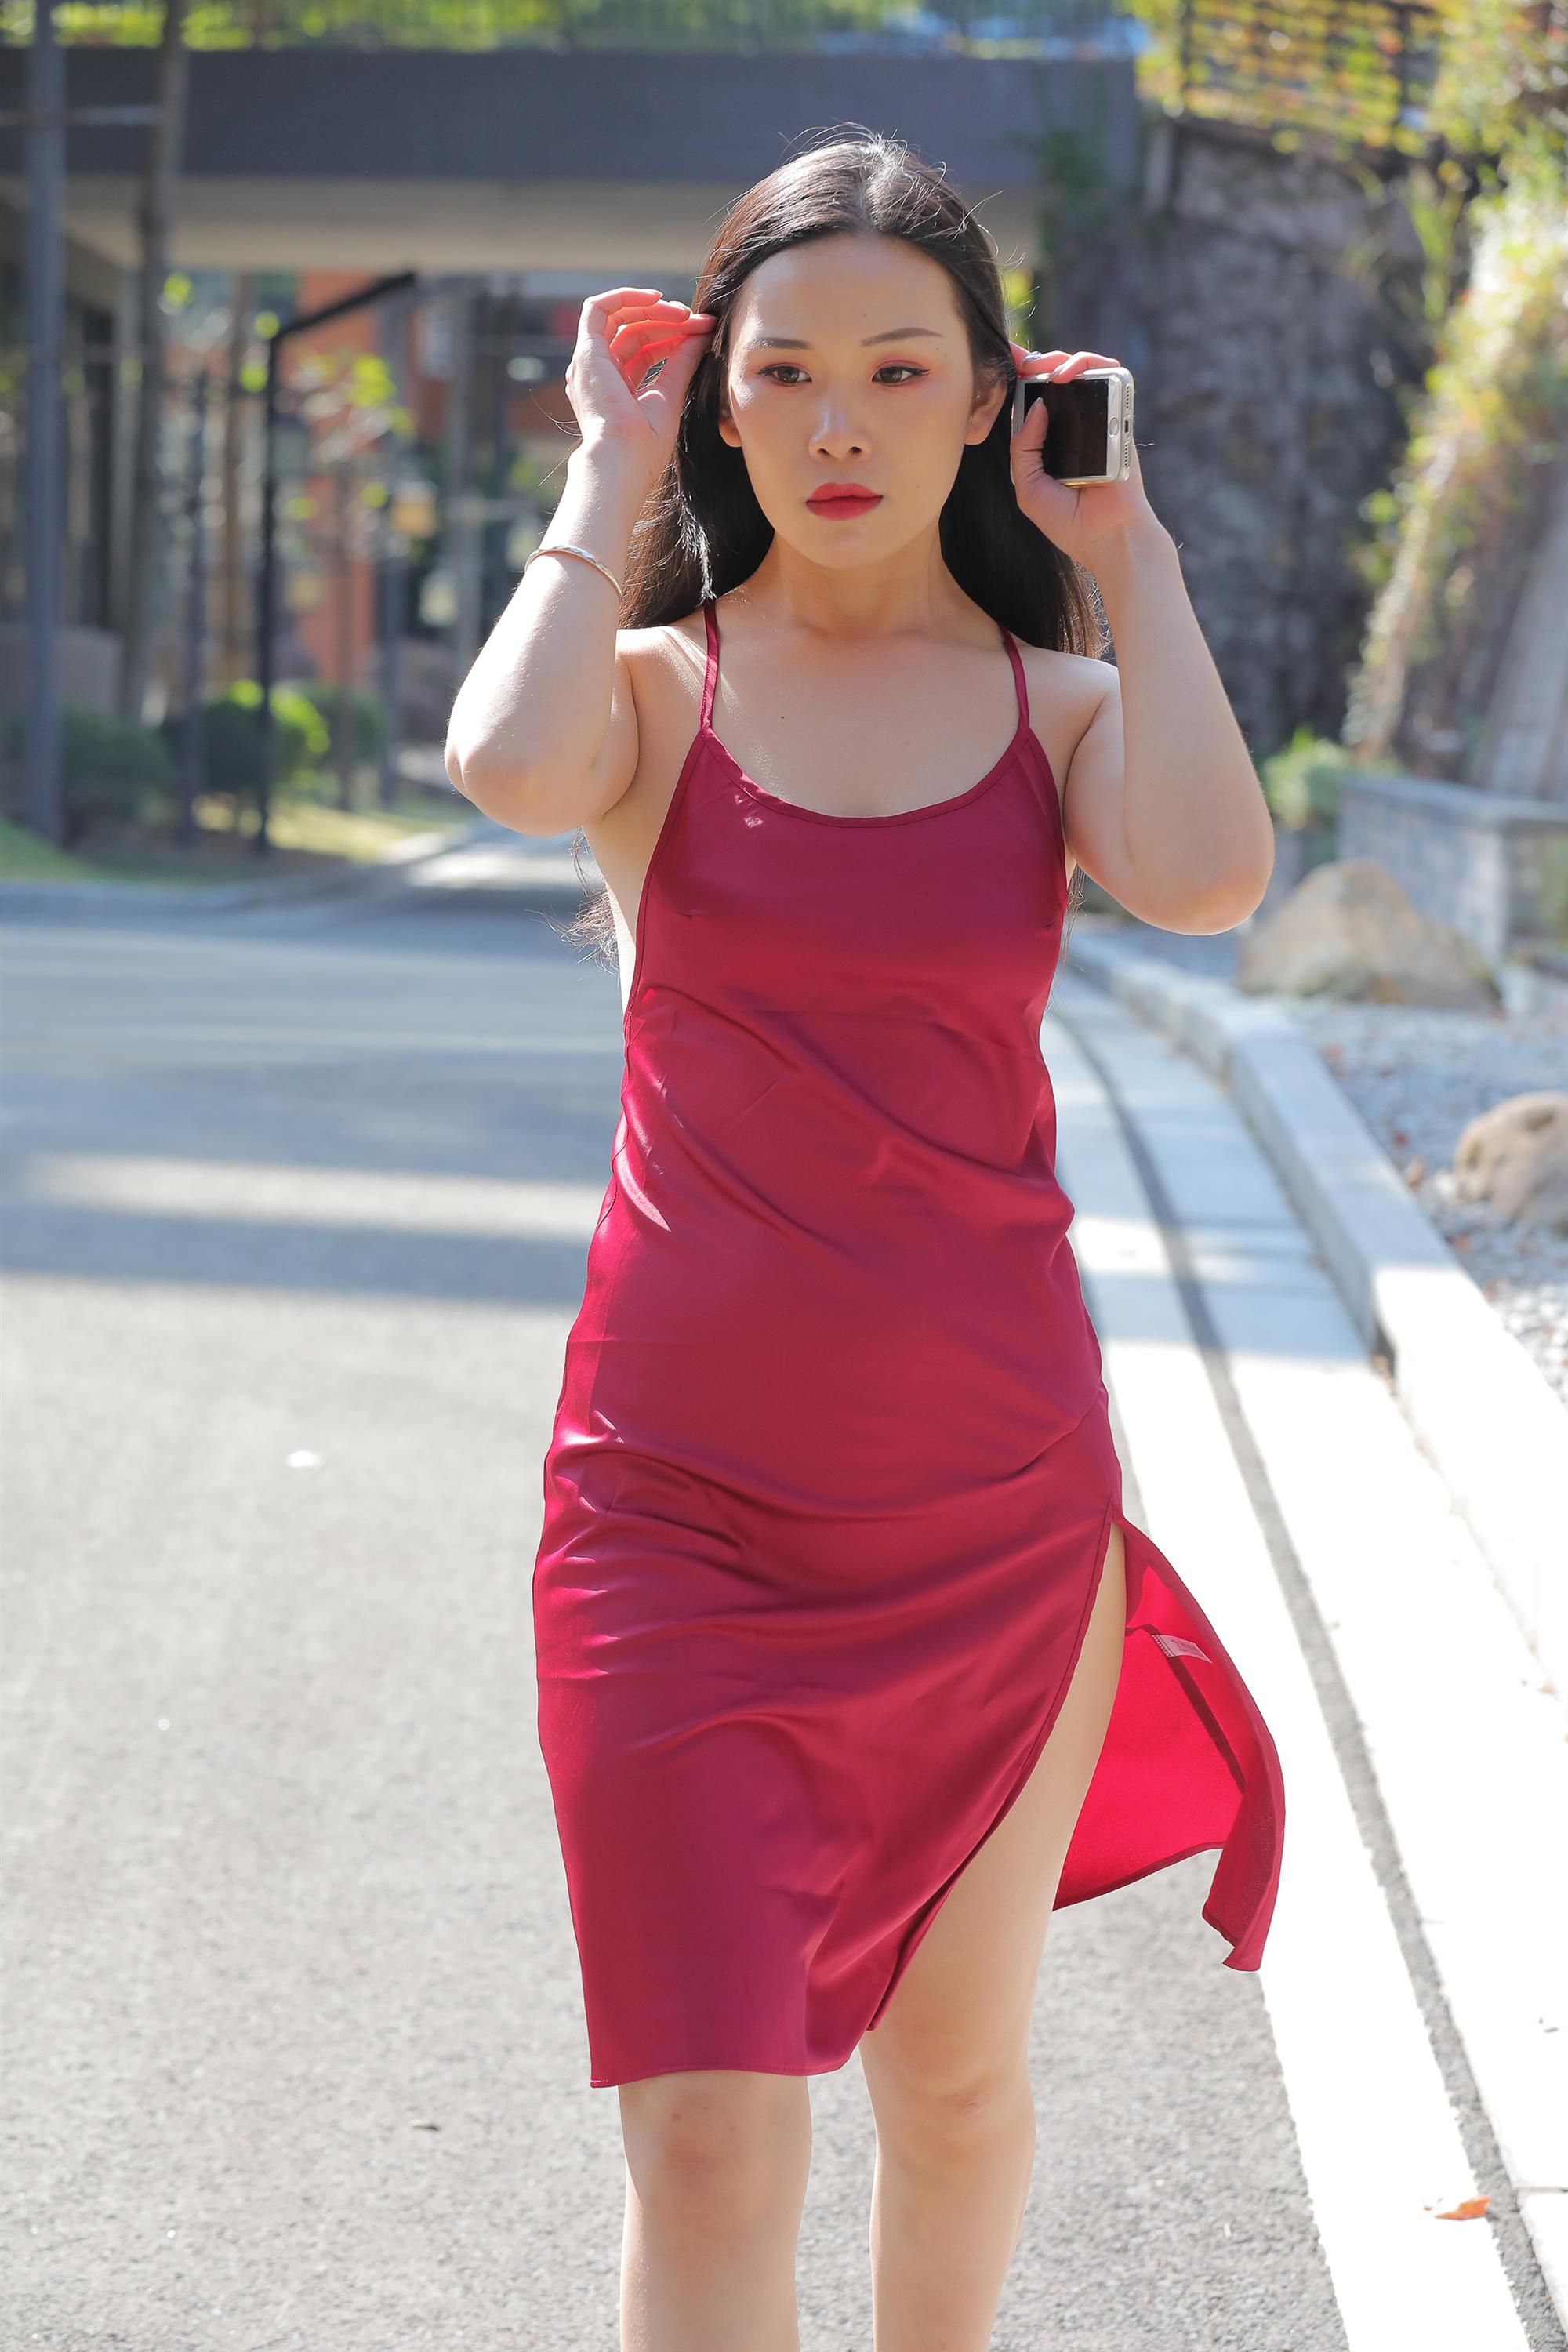 Street beauty in a red dress - 5.jpg